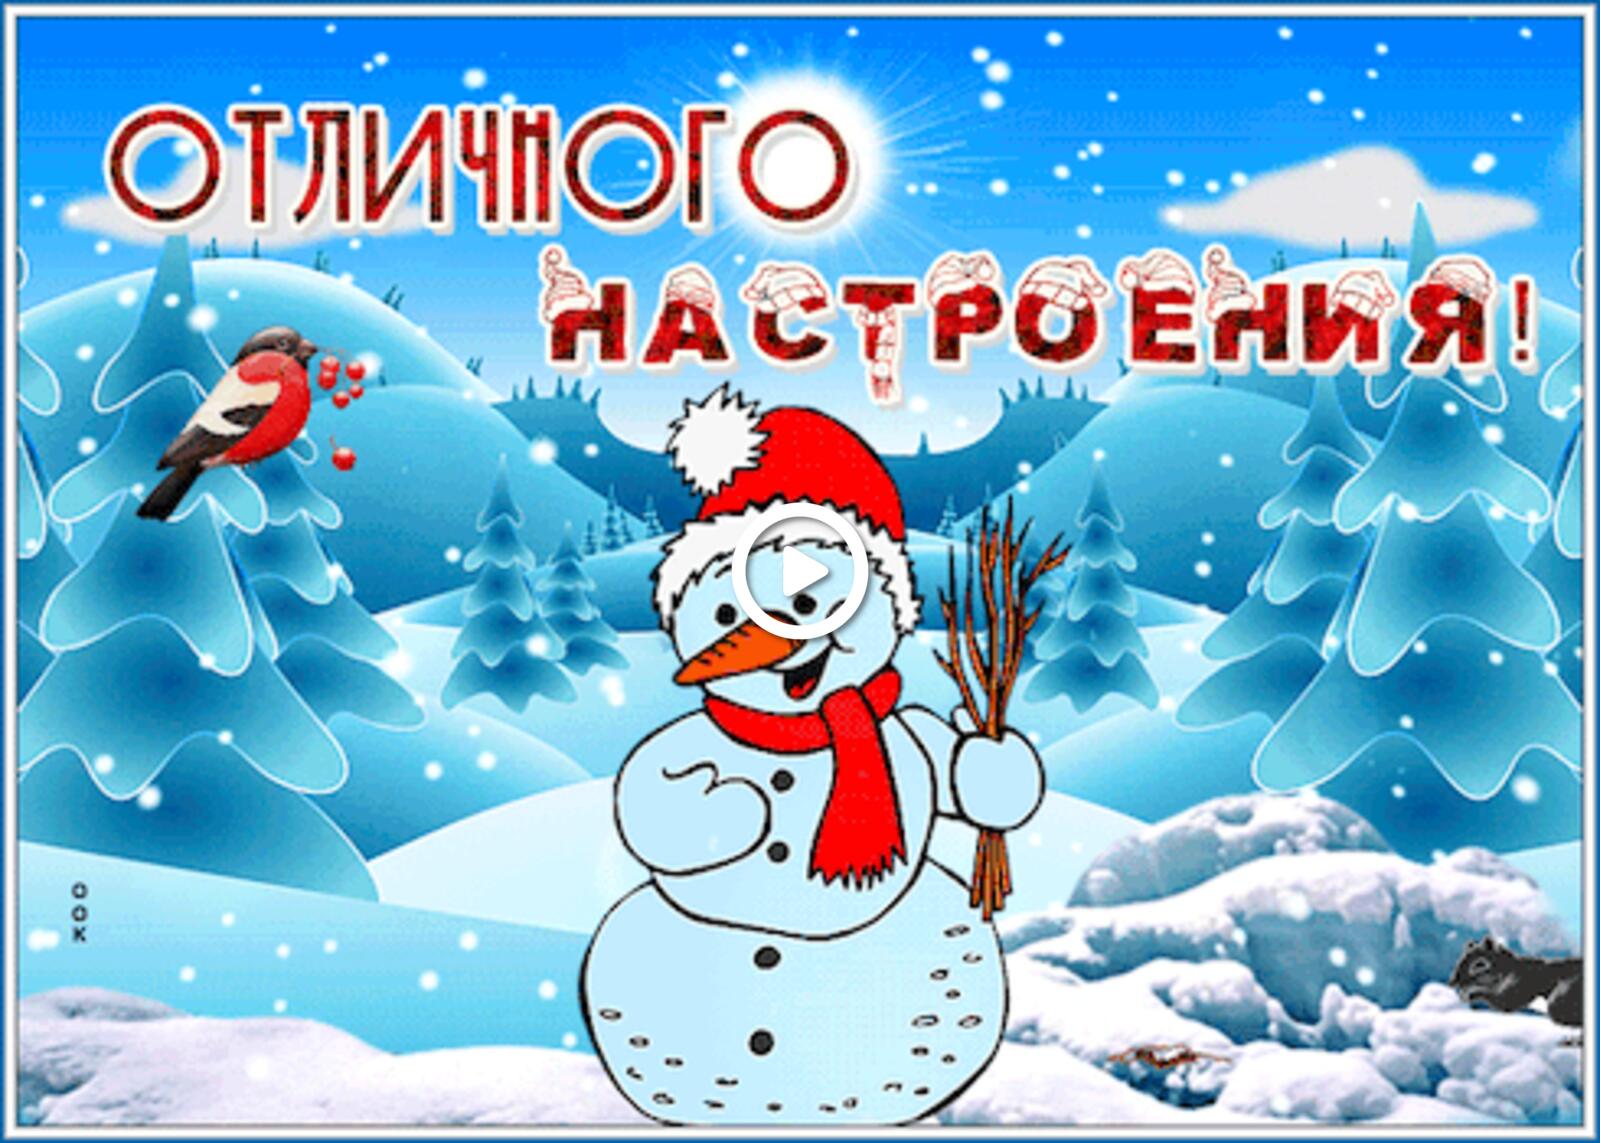 Открытка на тему анимационная отличного настроения настроения снеговик бесплатно